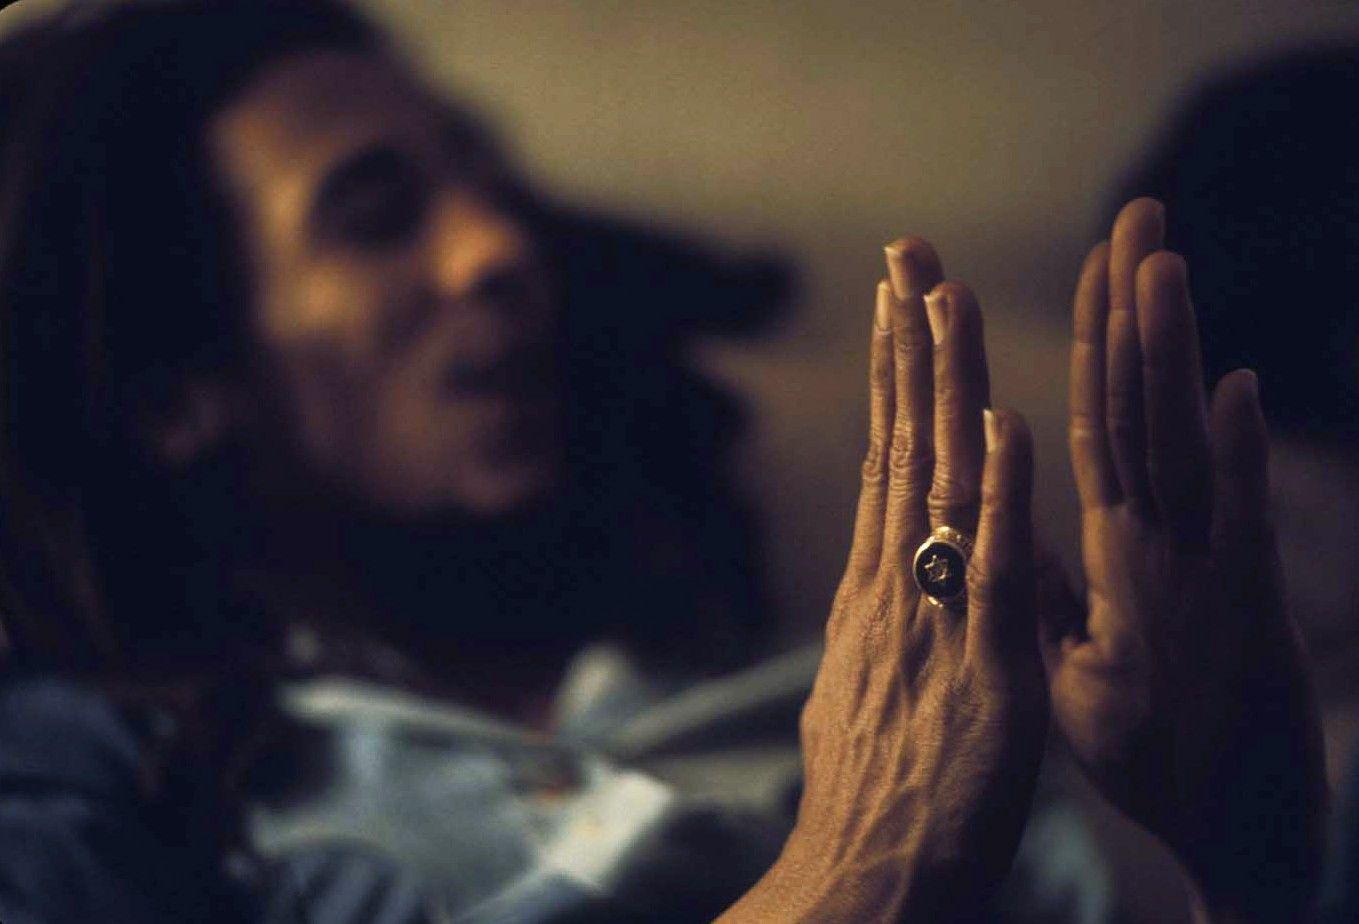 Bob Marley Desktop Background